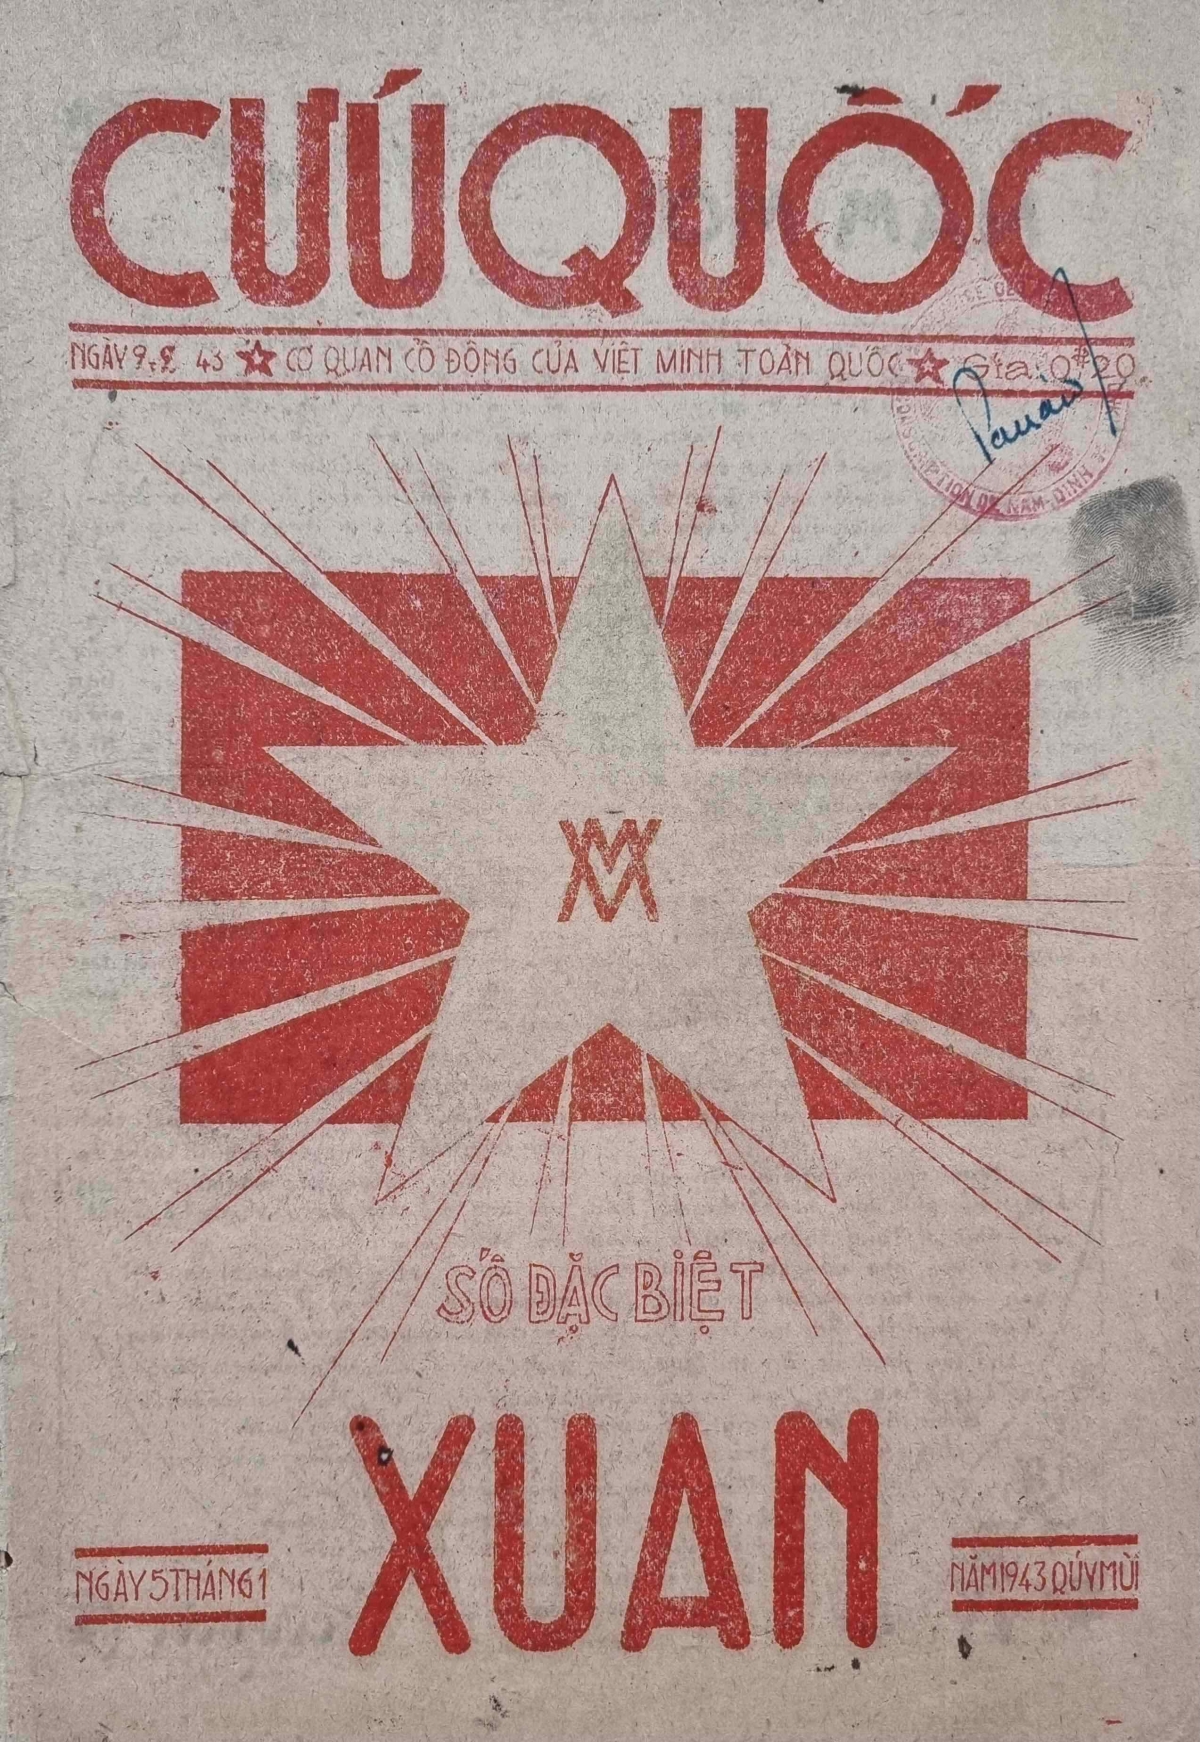 Báo Cứu Quốc – Cơ quan ngôn luận của Mặt trận Việt Minh (1941 – 1945)
(Nguồn: Nhà sưu tầm Nguyễn Phi Dũng)